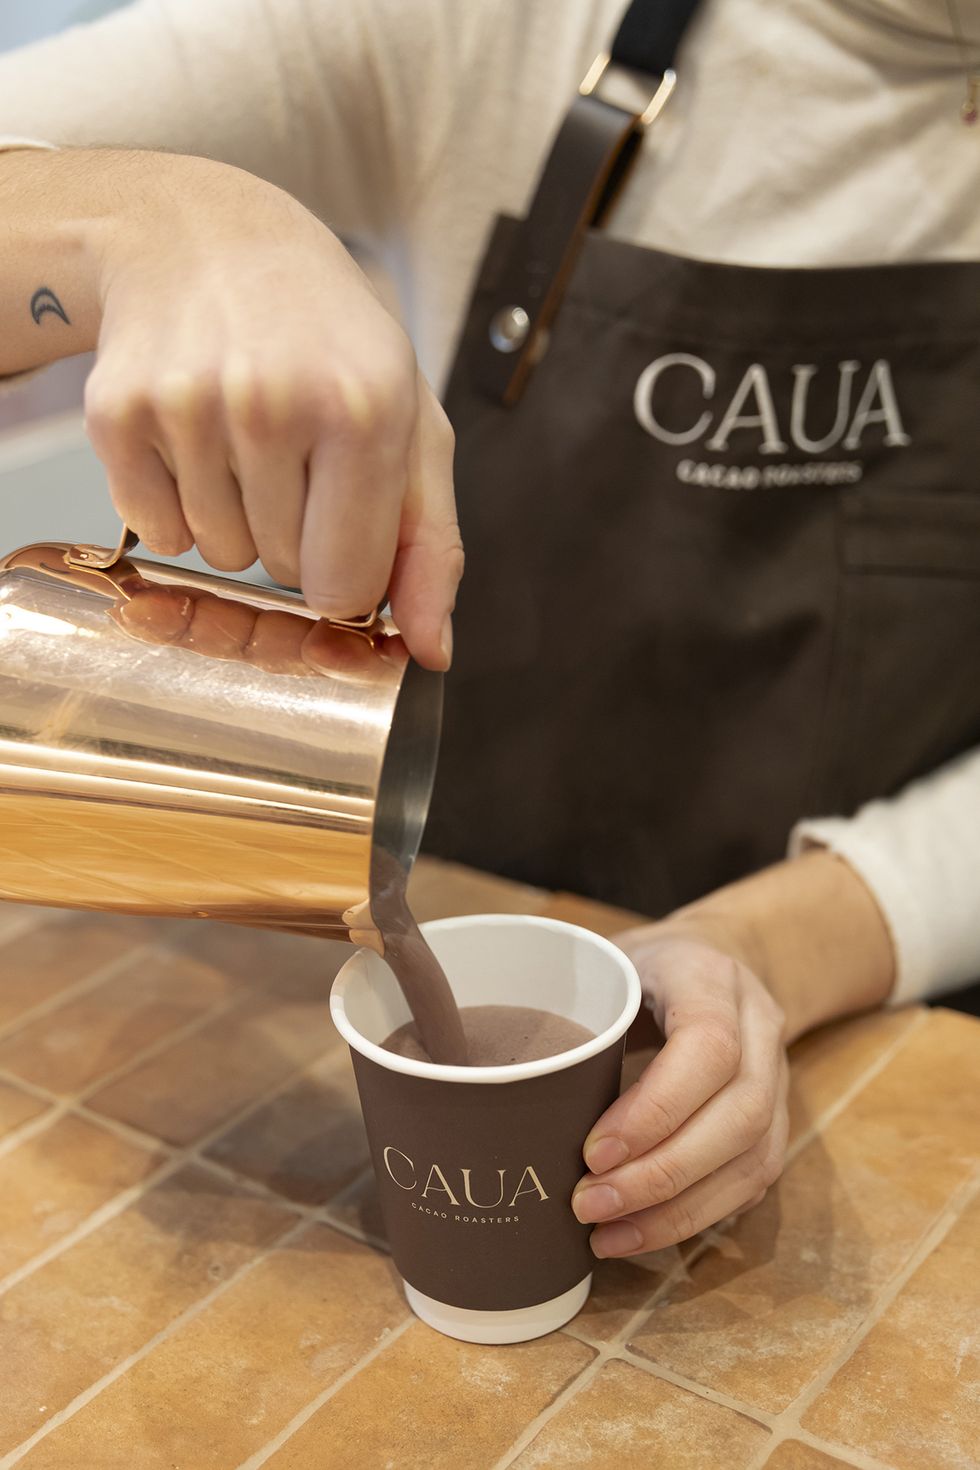 chocolate de caua cacao roasters, de barcelona